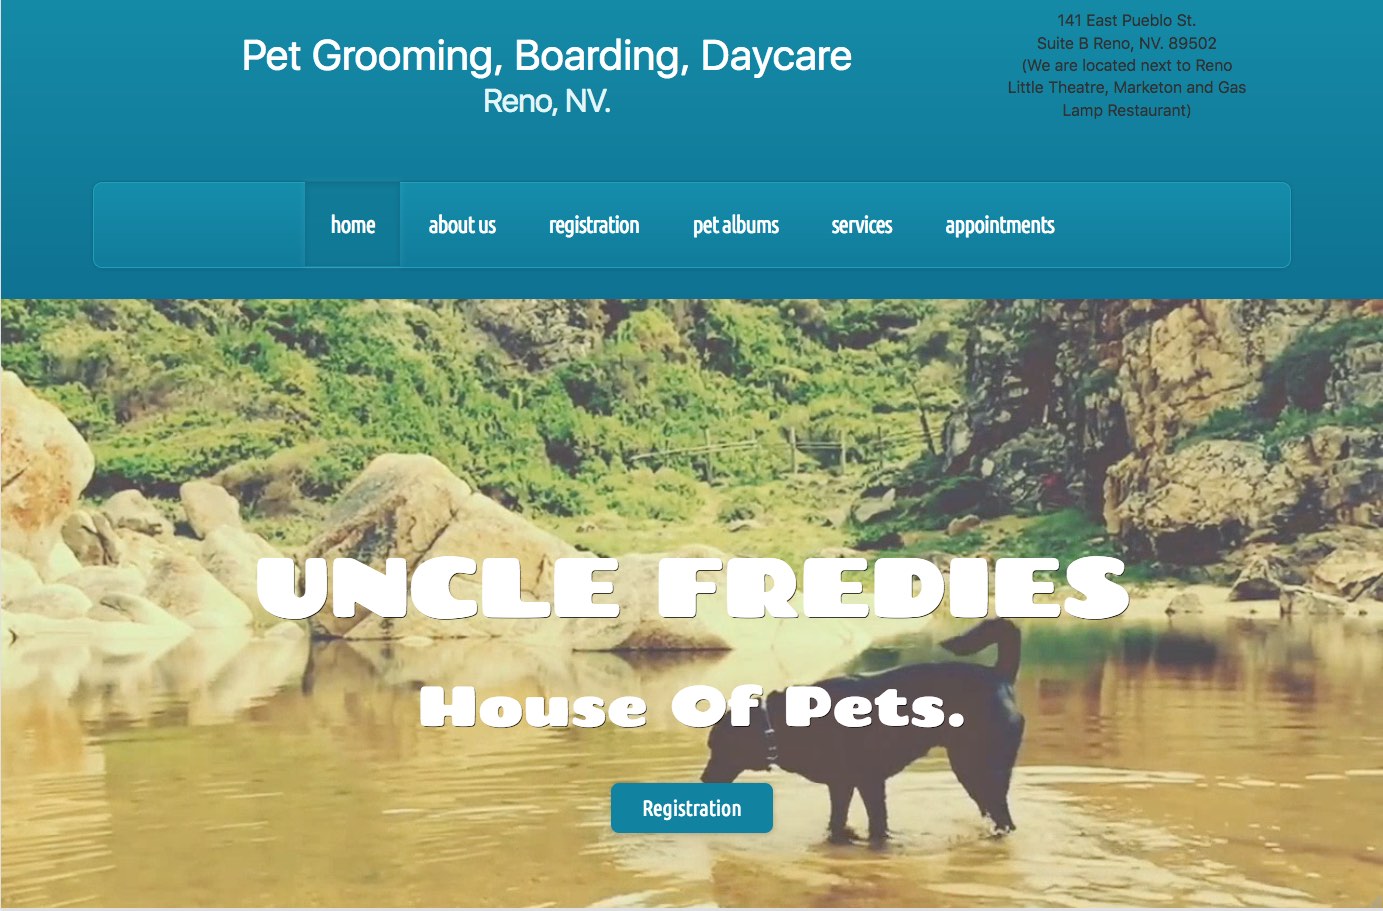 Pet Grooming website design